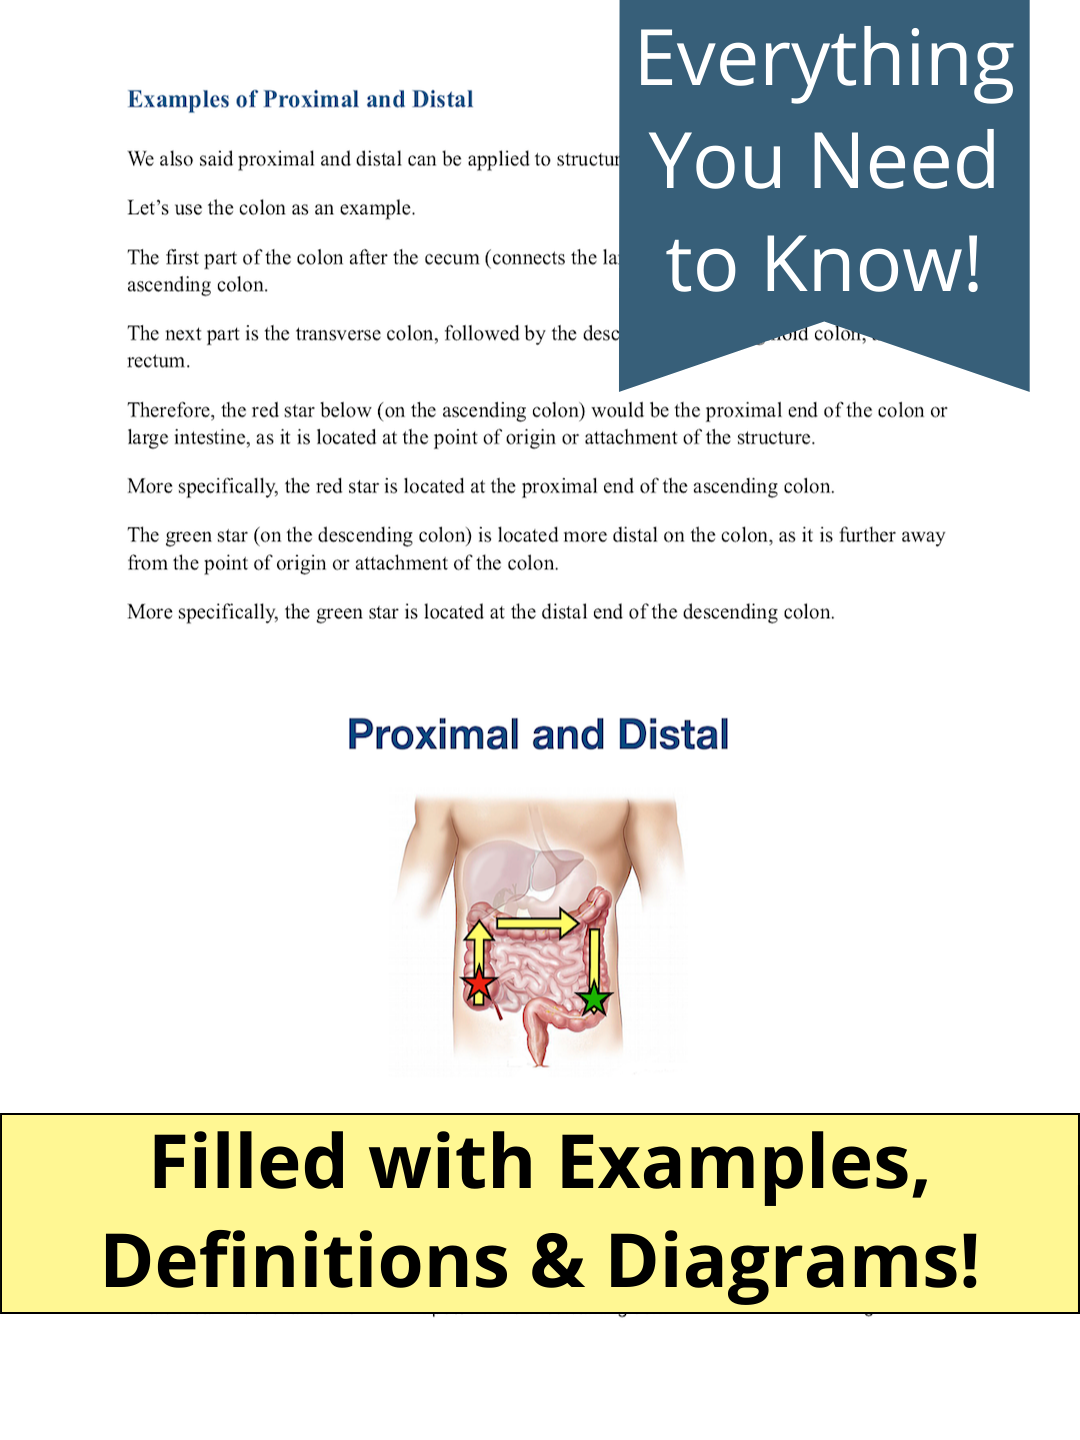 proximal vs distal examples